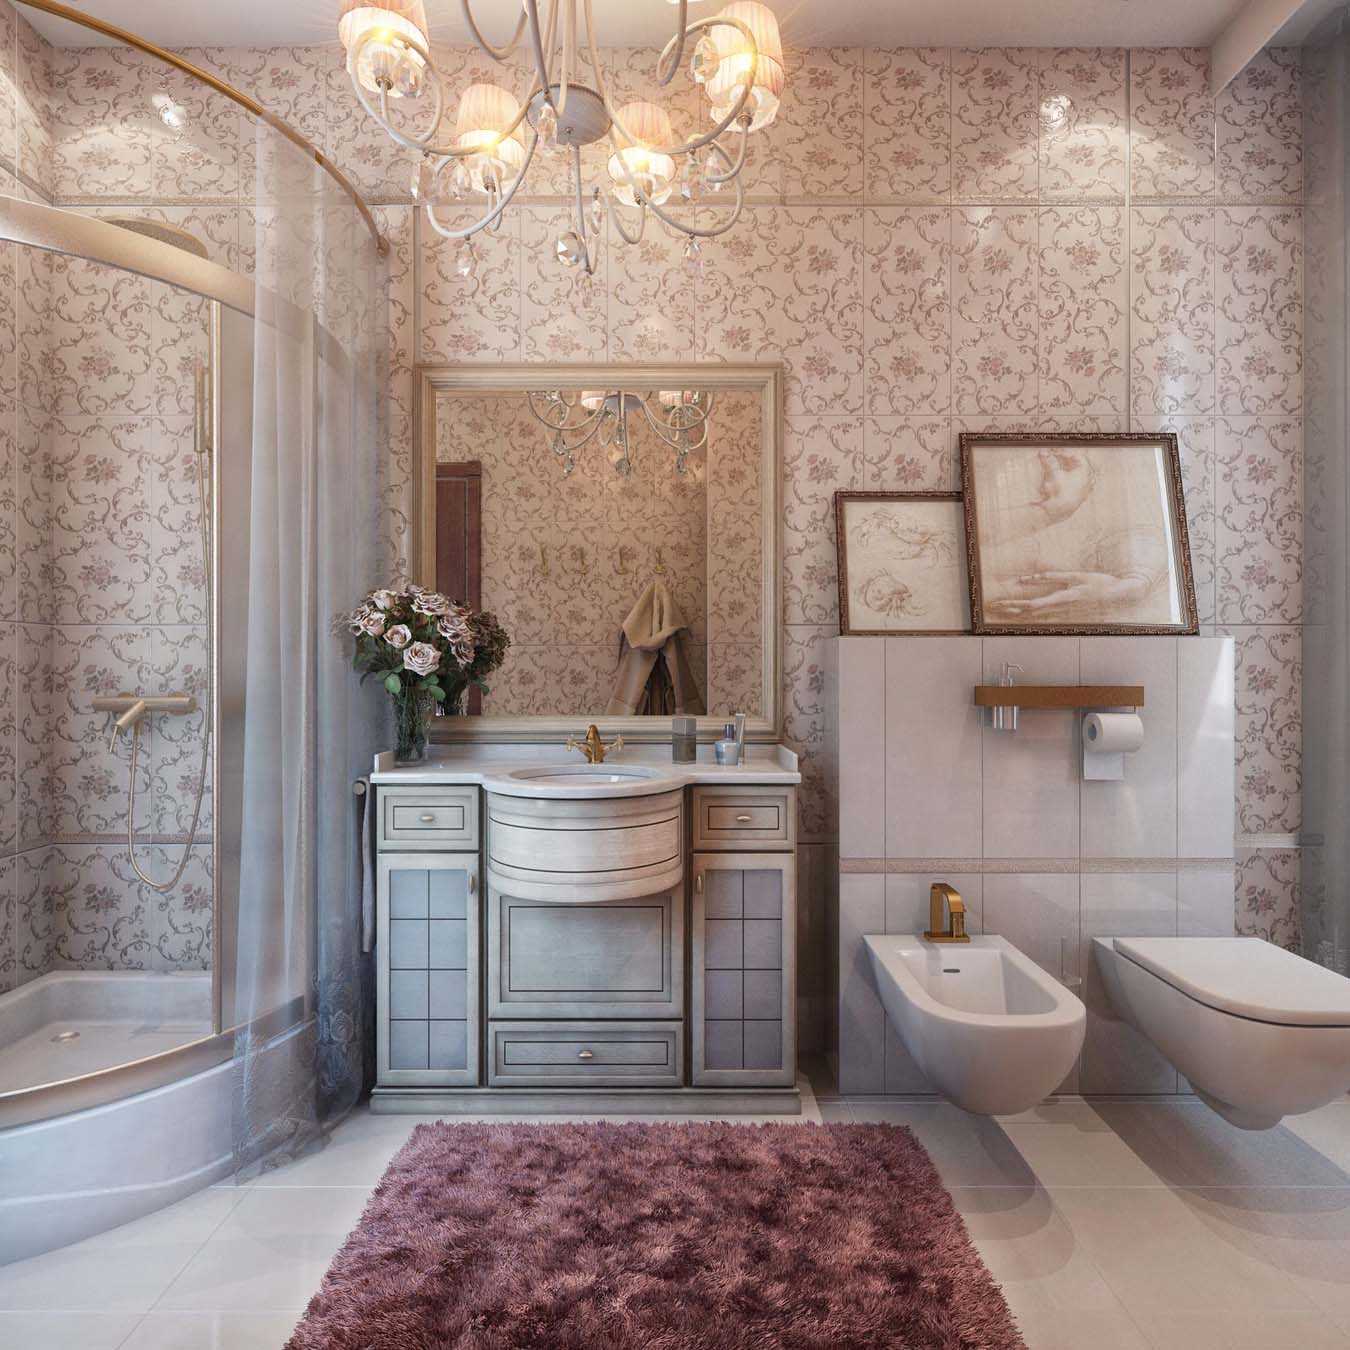 l'idée d'un style lumineux de la salle de bain dans un style classique